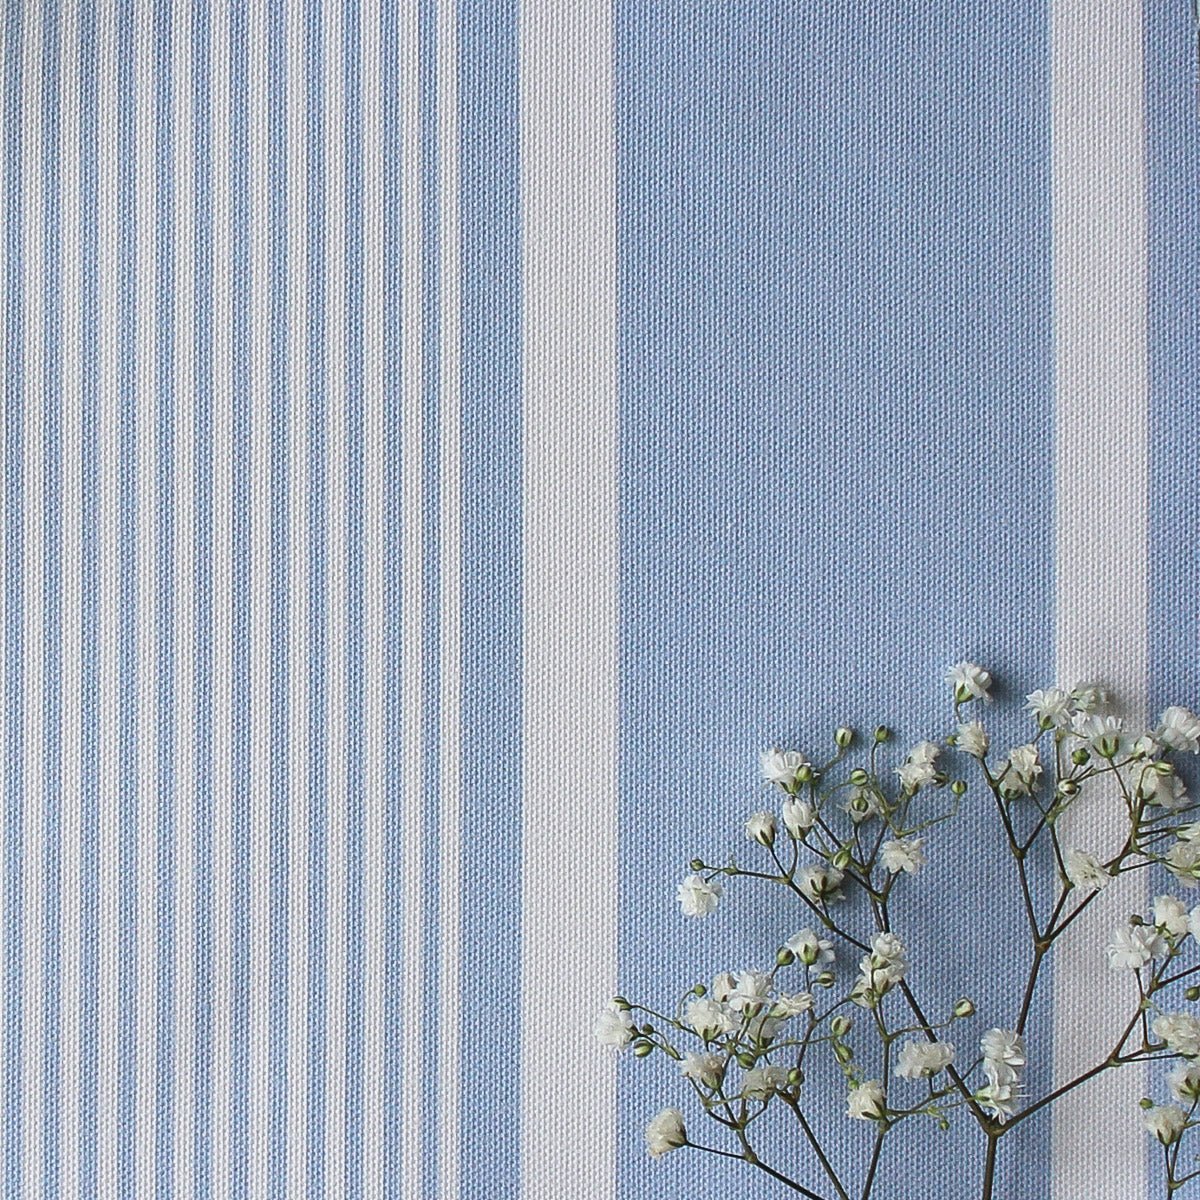 Deckchair Stripe Fabric - Cornflower - Hydrangea Lane Home